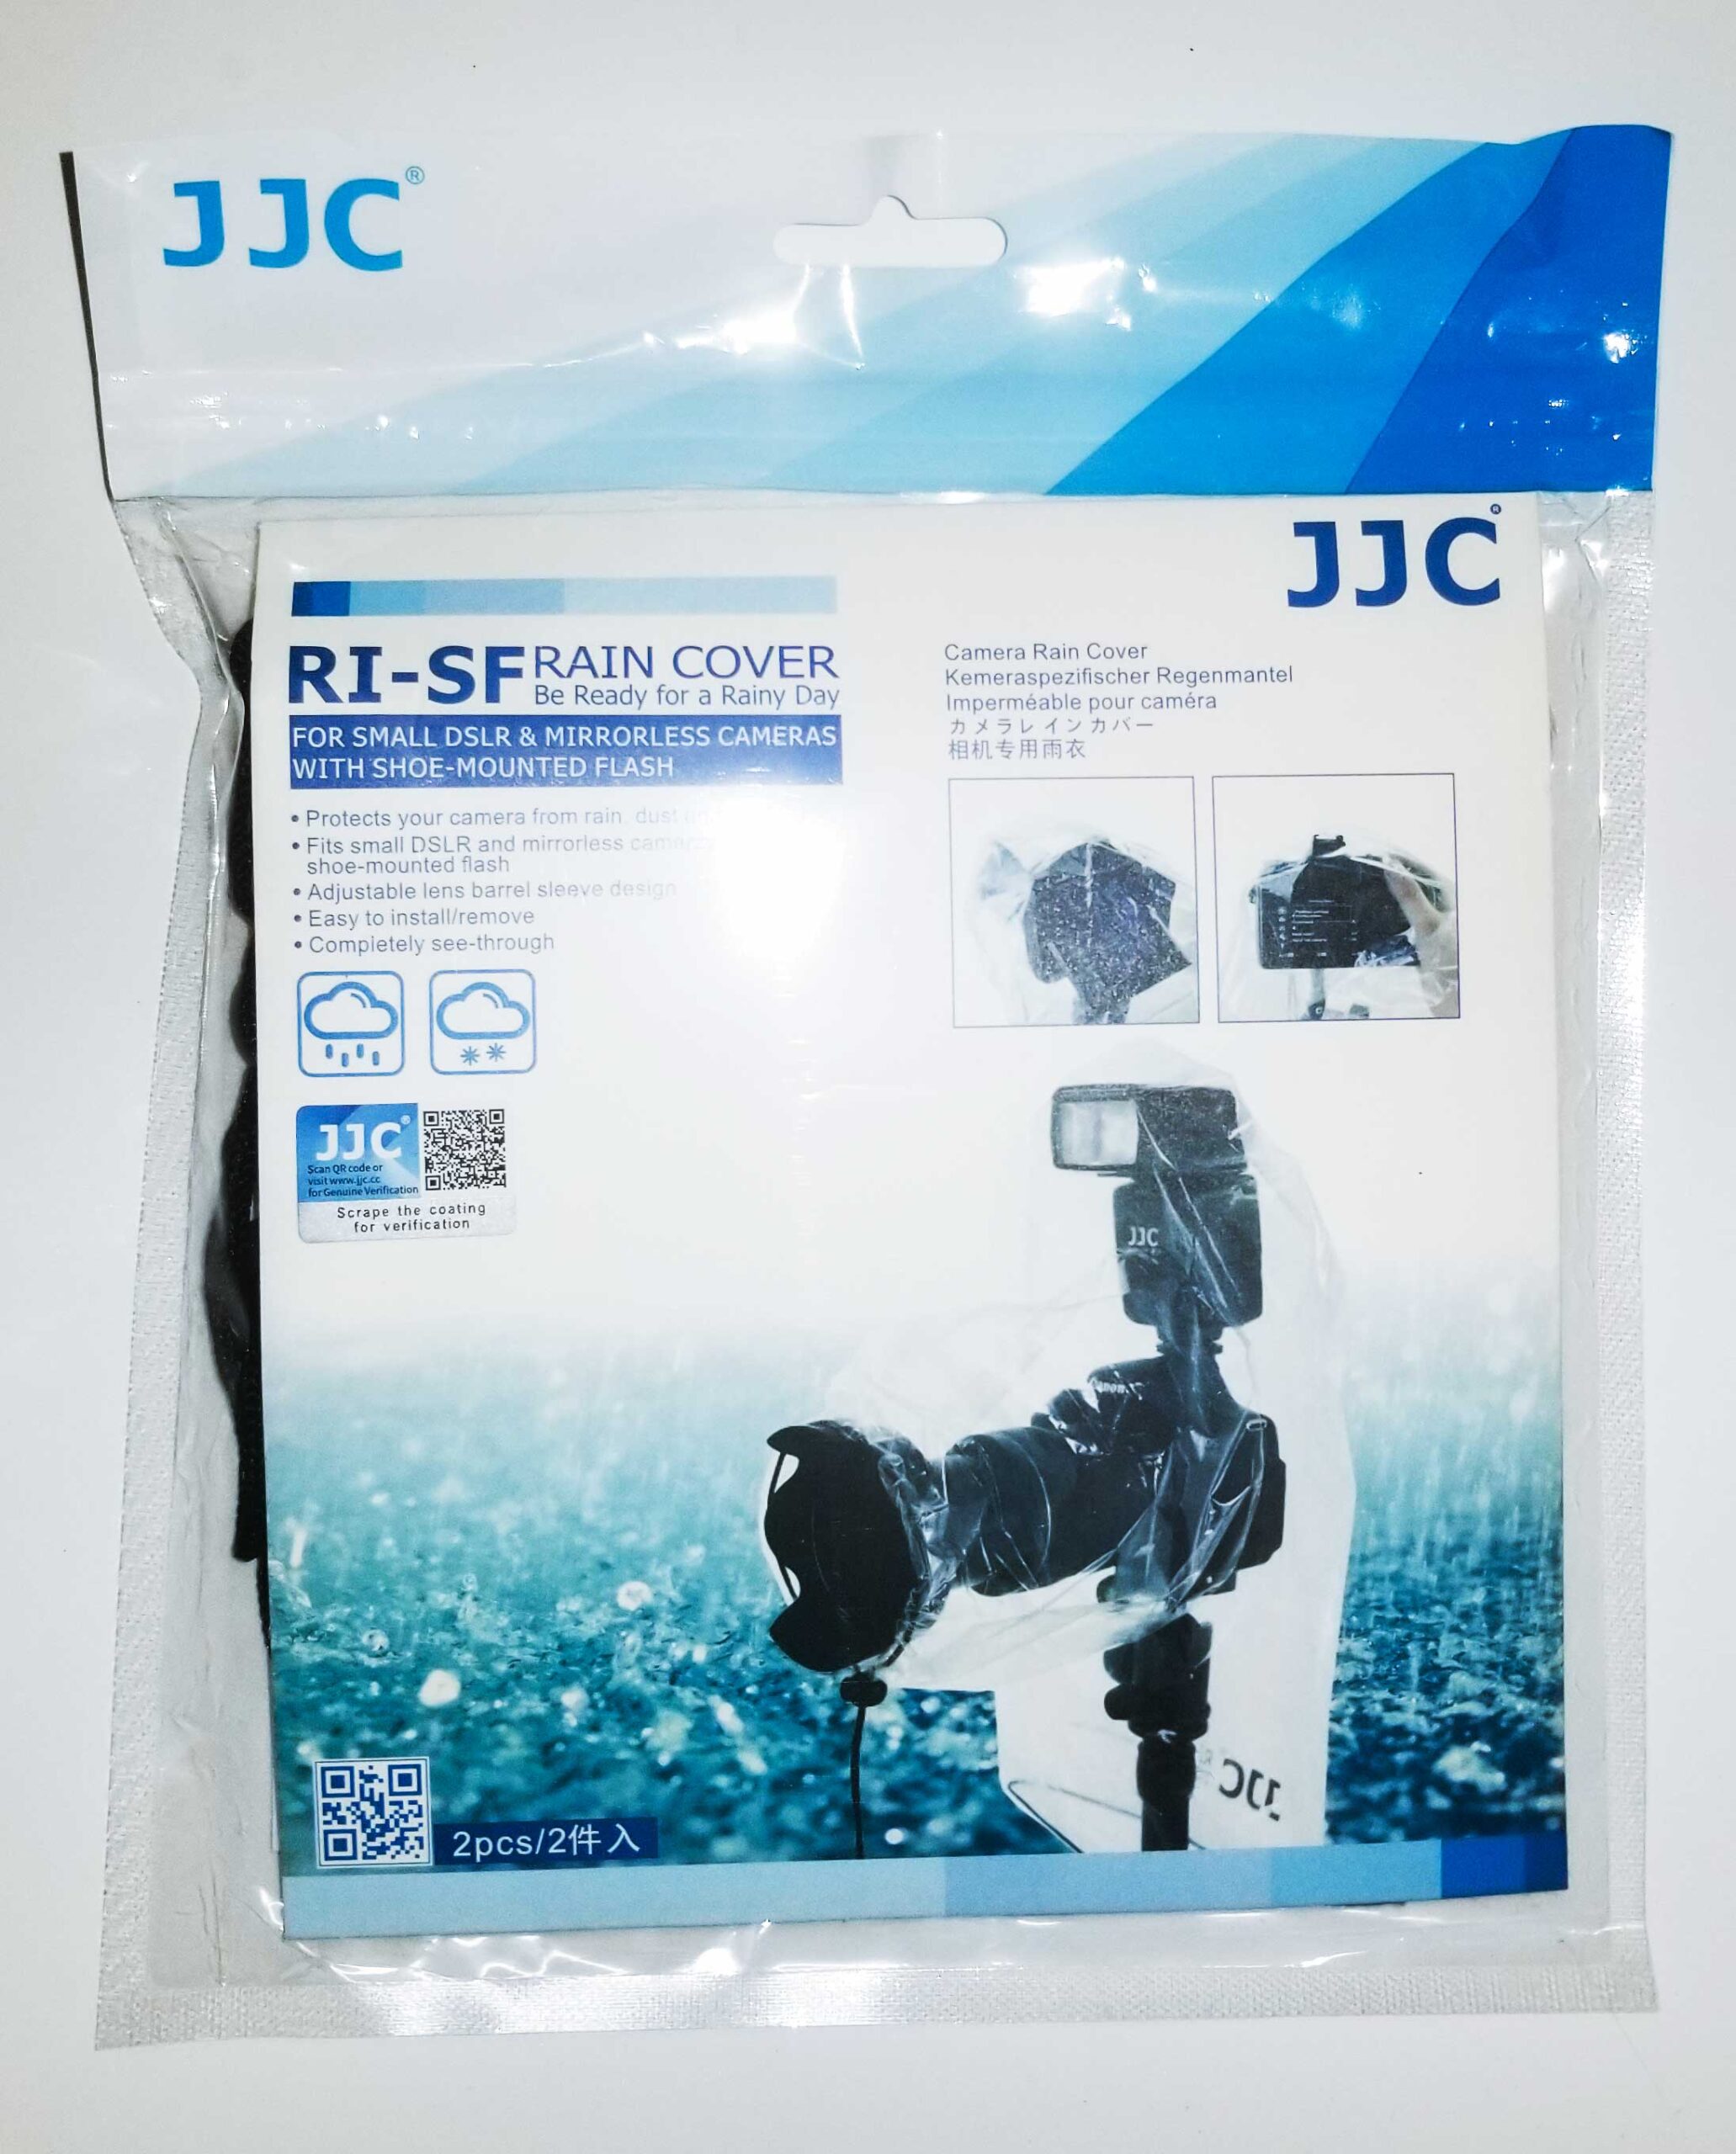 ヌーンストアJJC カメラレインカバー RI-5 2枚入り JJC-RI-5